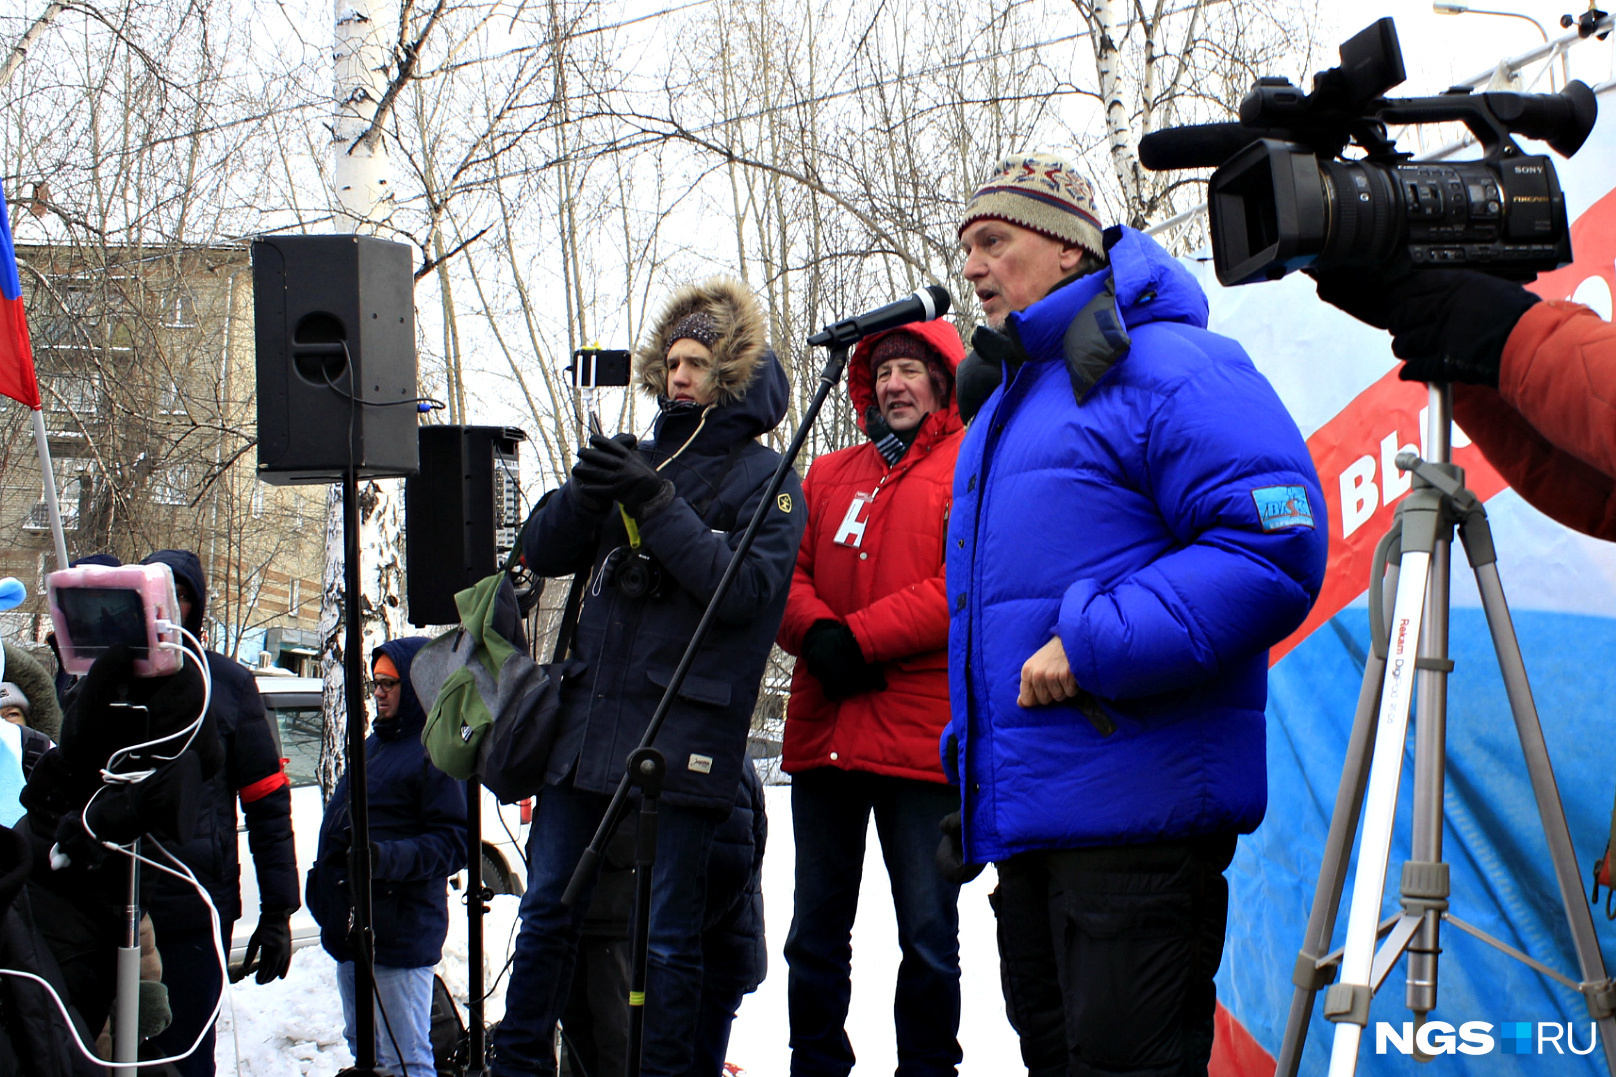 Аркадий Янковский (в синей куртке) на протестном митинге против недопуска Навального на президентские выборы